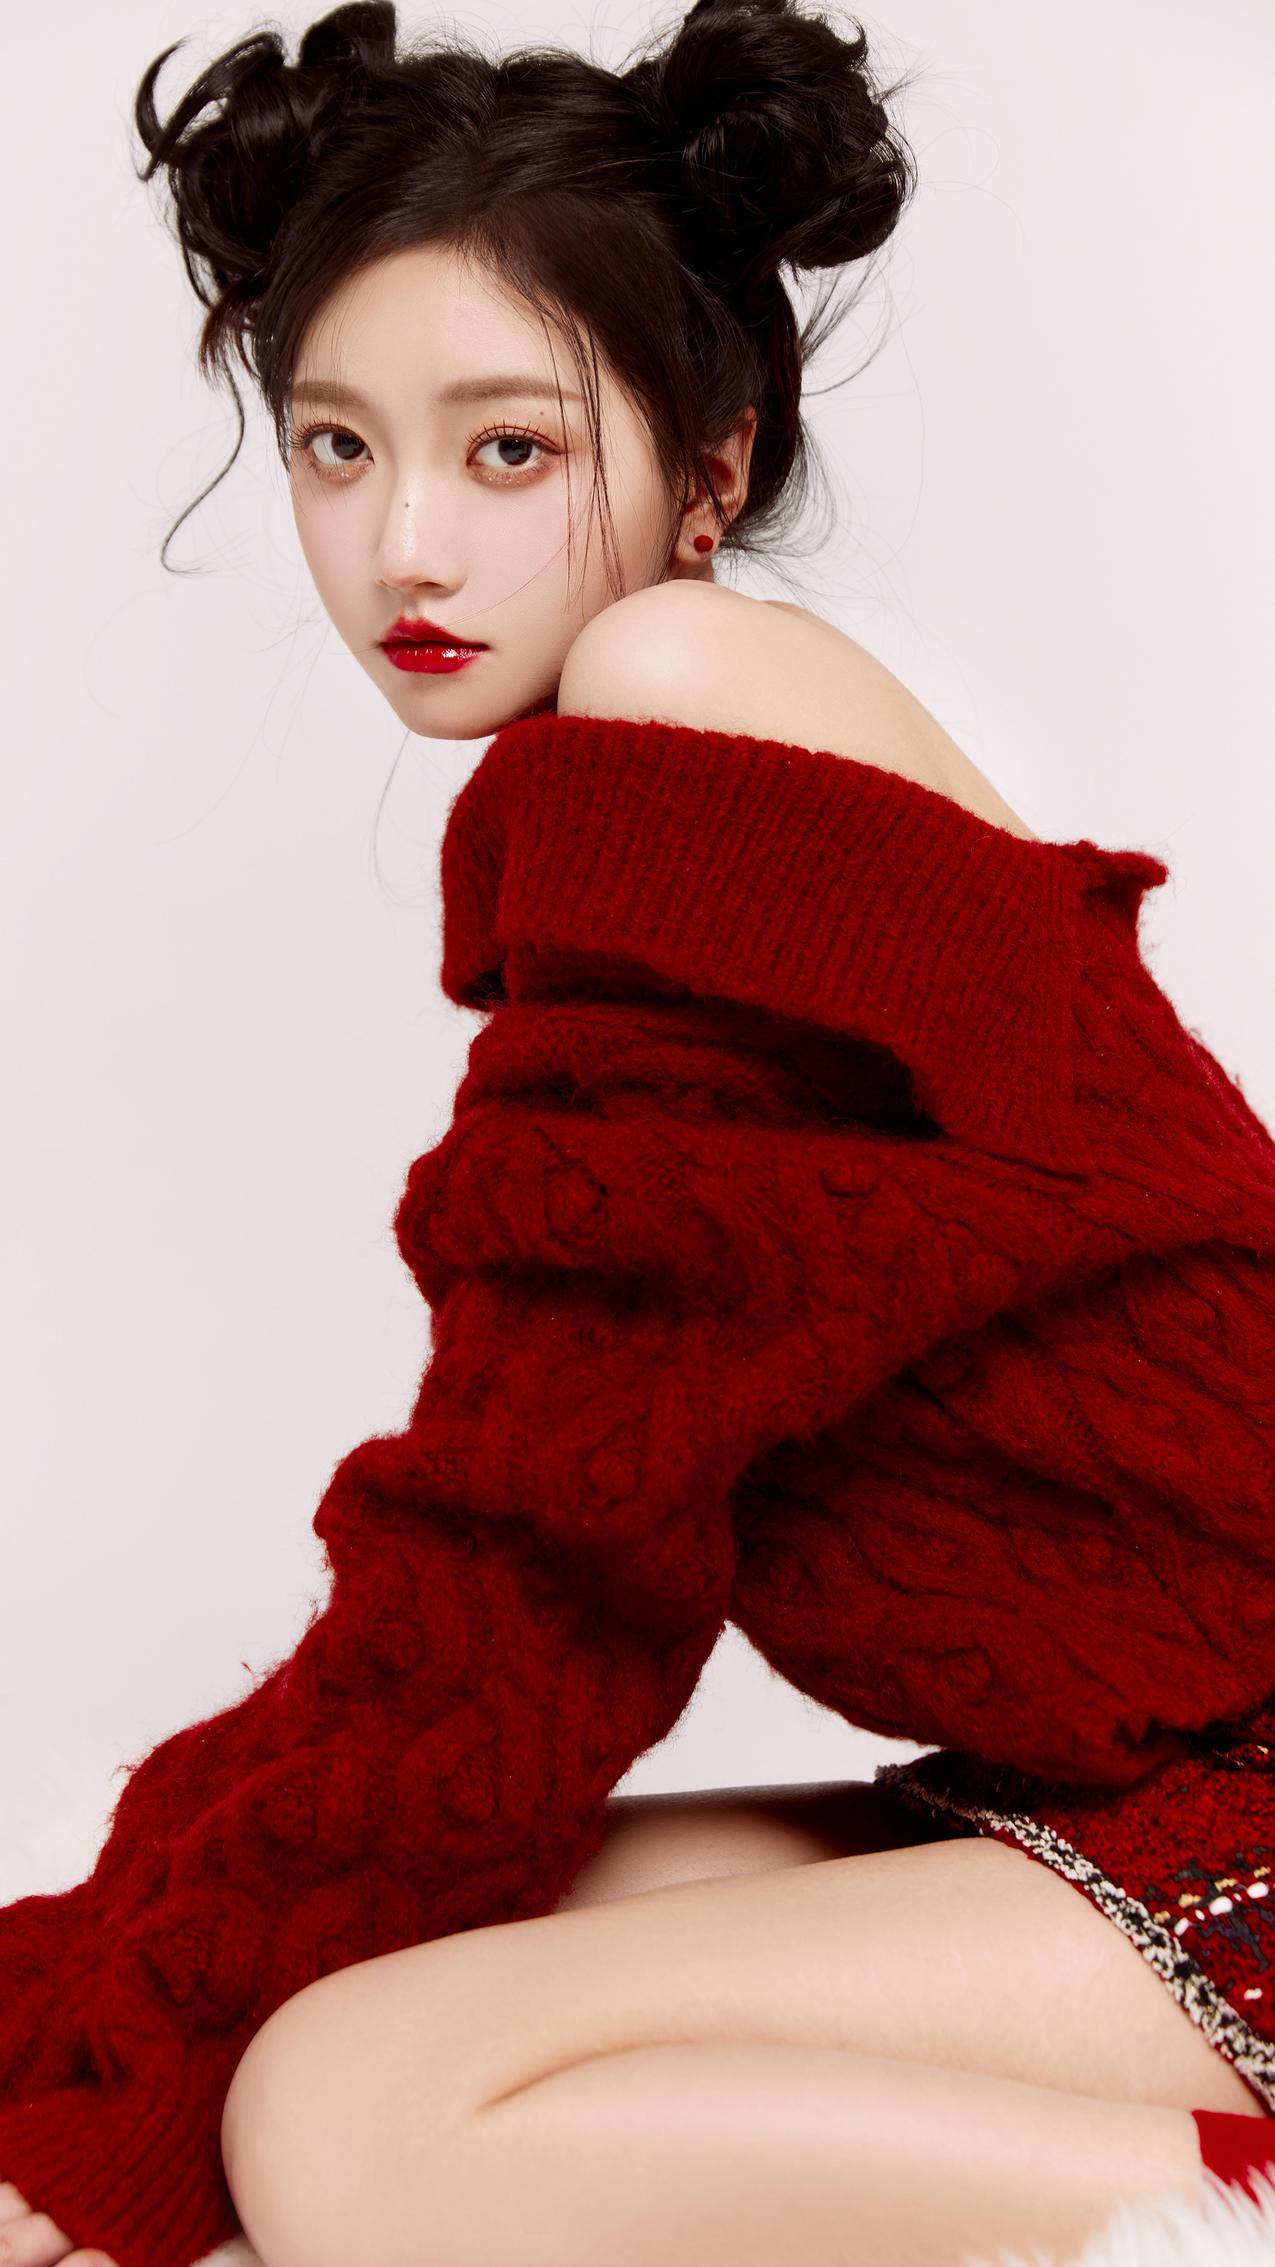 亚洲人，红色的帽子，时尚，毛衣，美女预览 | 10wallpaper.com